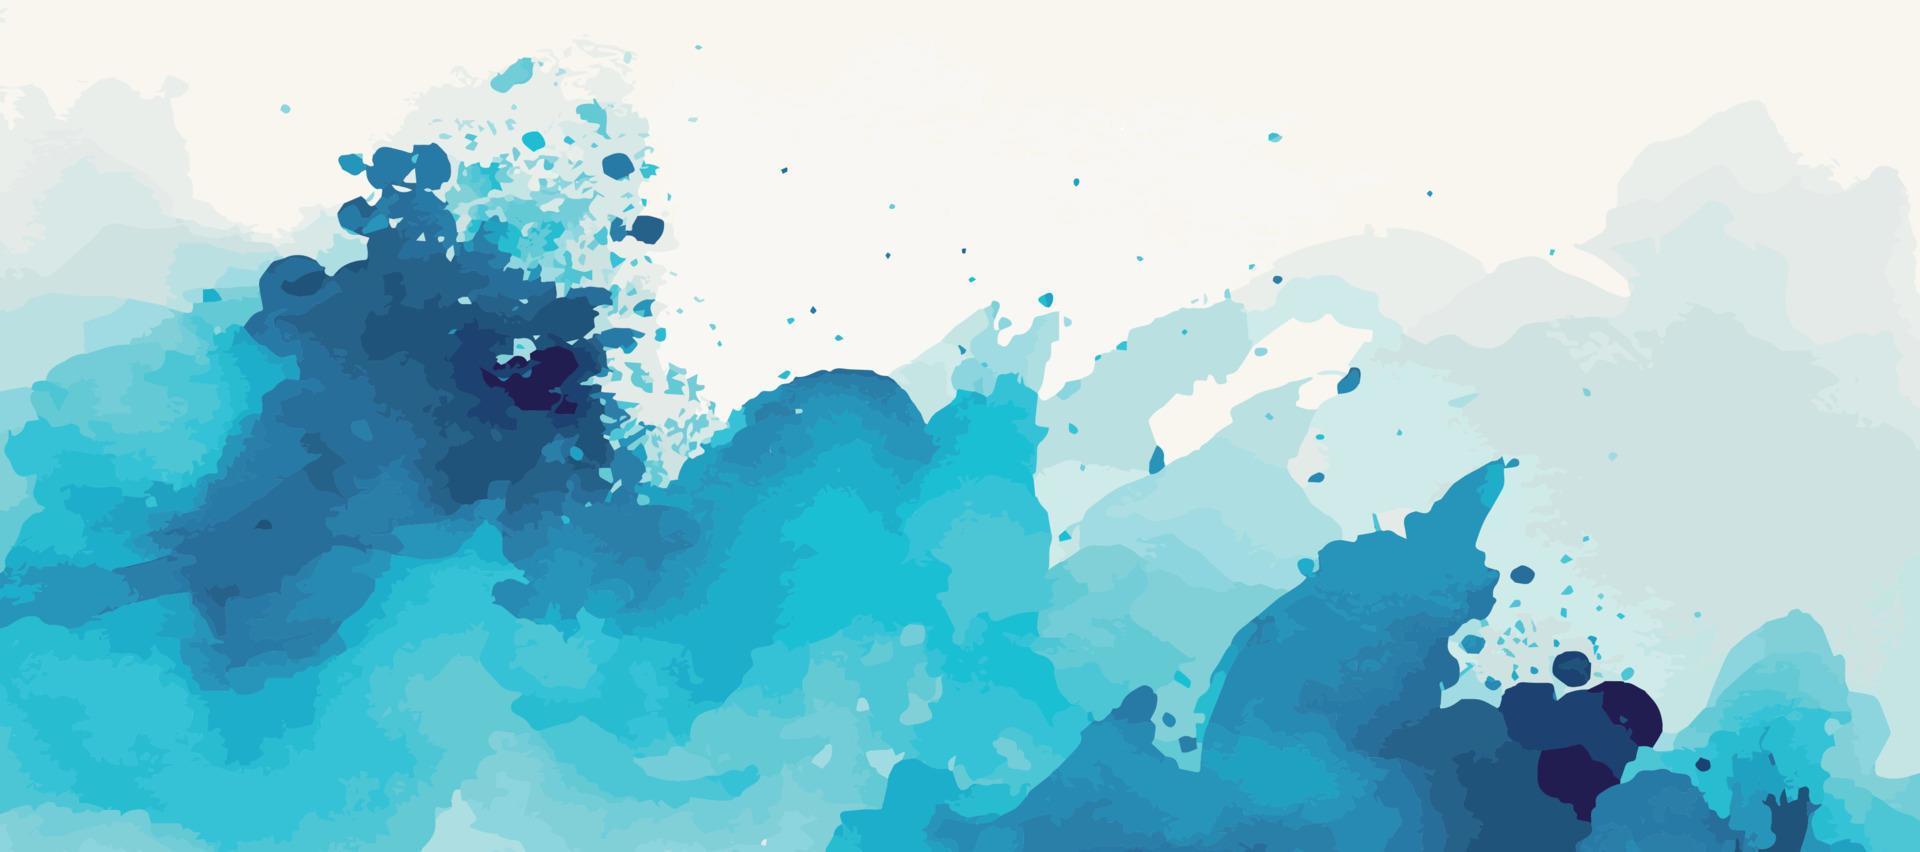 realistische blaue Aquarellpanoramabeschaffenheit auf weißem Hintergrund - Vektor